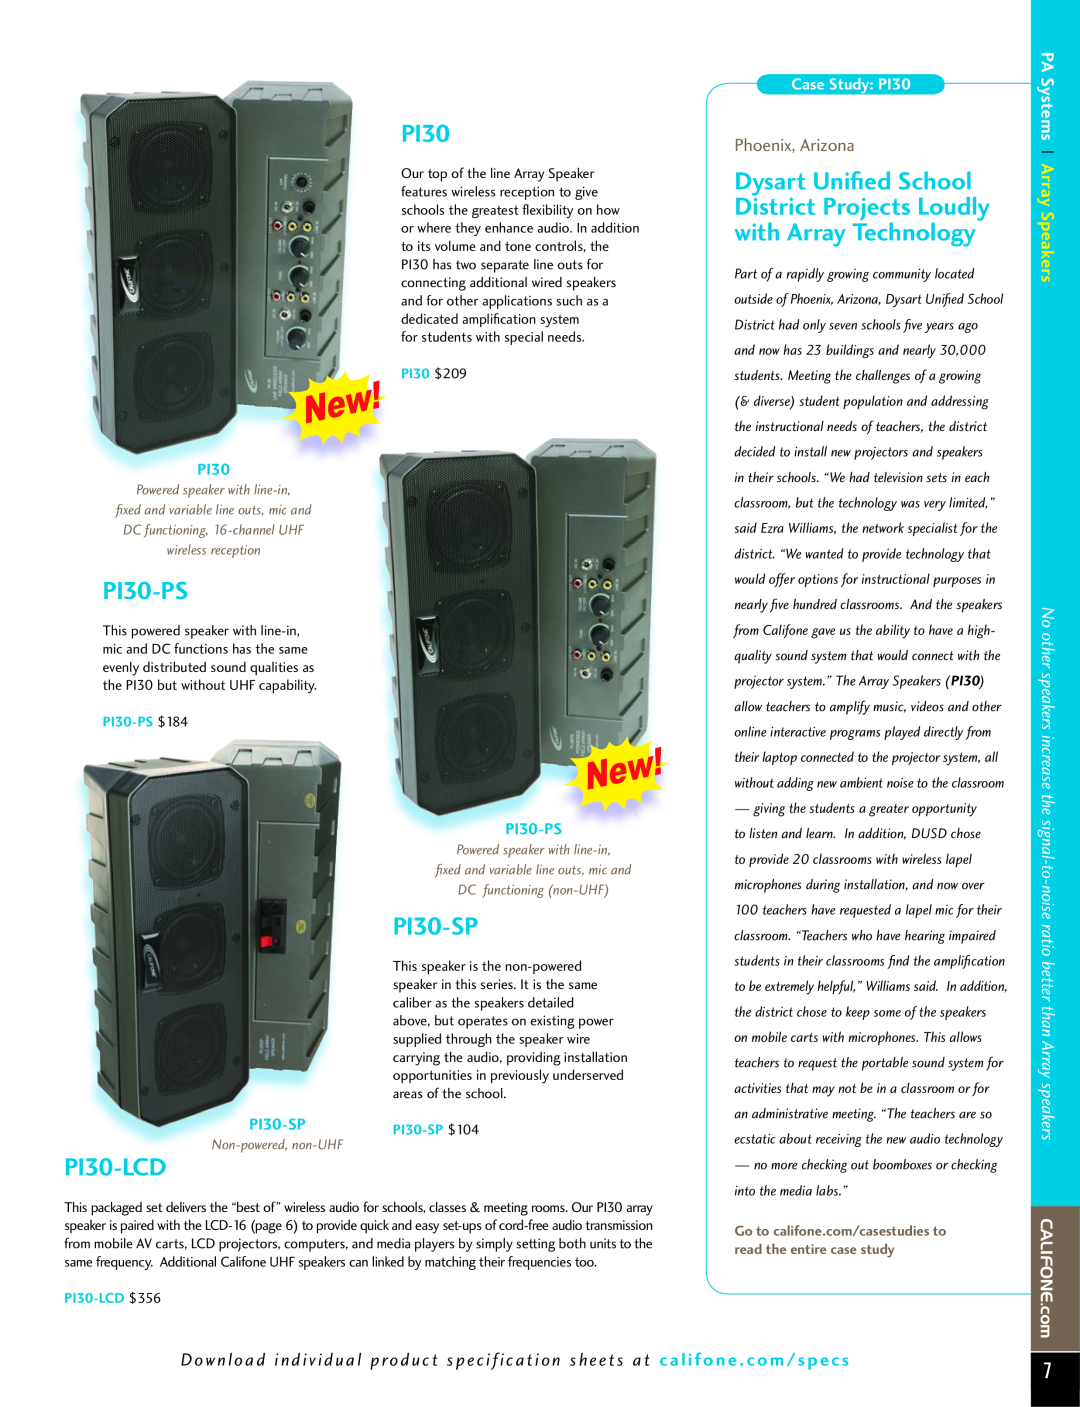 Califone PI30-IRSYS manual PI30-PS, PI30-LCD, PI30-SP, Phoenix, Arizona, PA Systems Array Speakers, Case Study PI30 